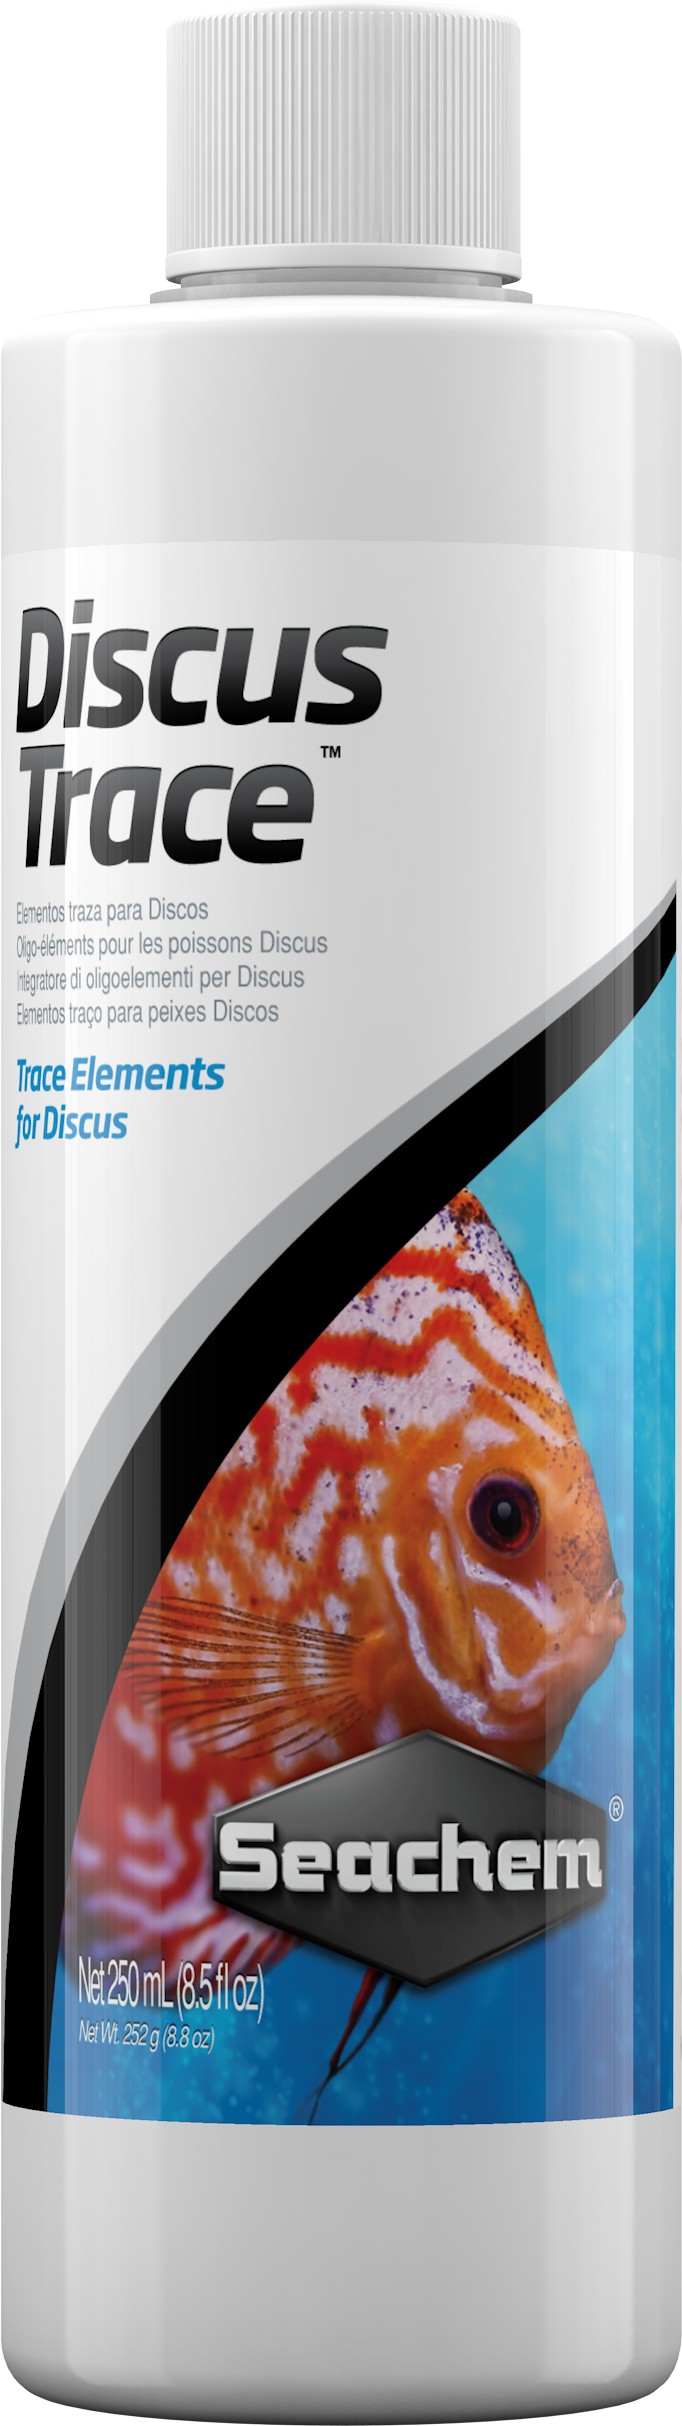 Seachem Discus Trace 250ml - odżywka dla dyskowcówAC